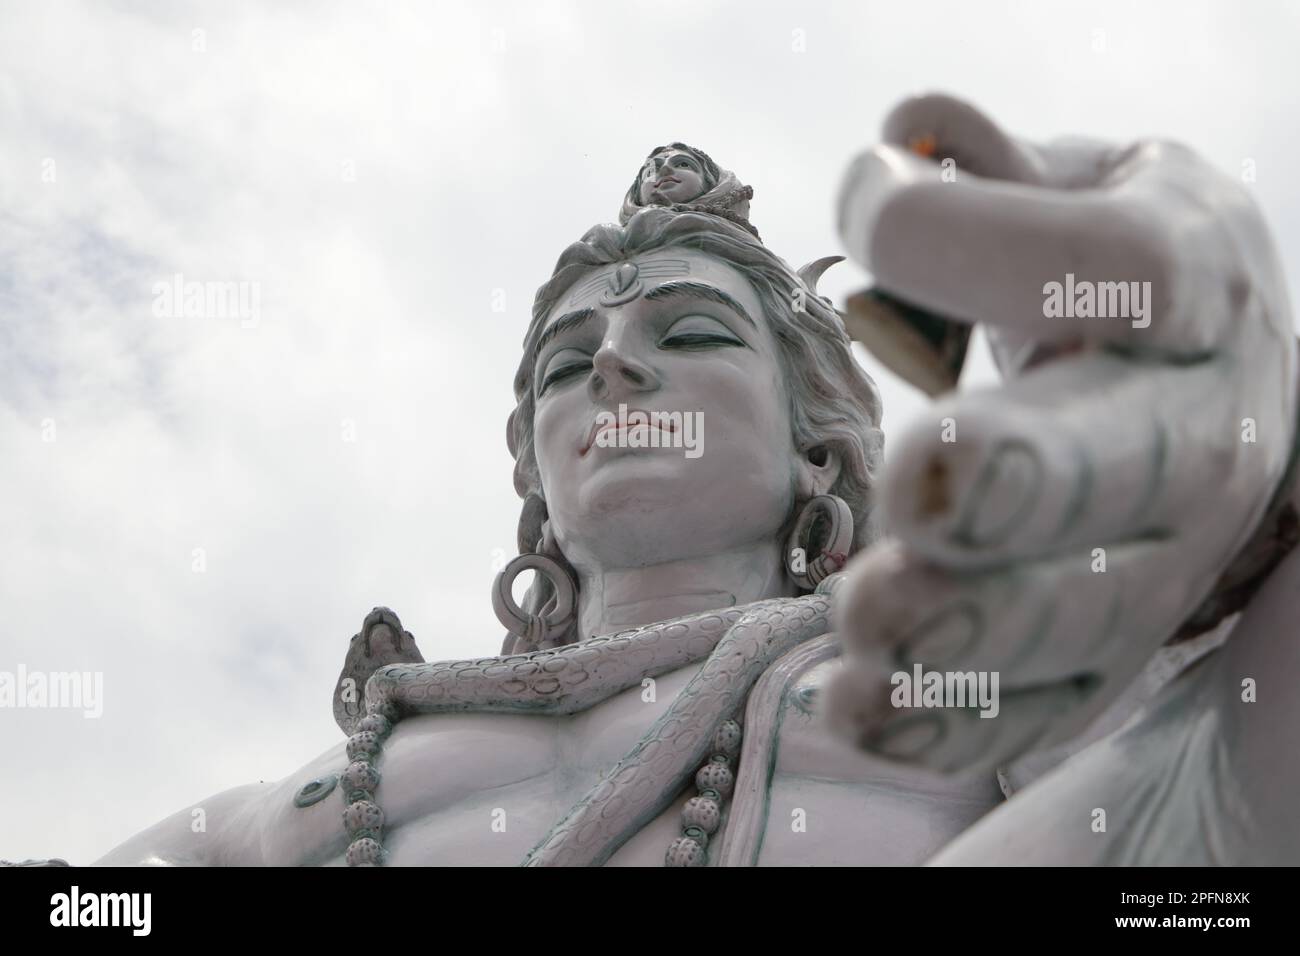 Statue du seigneur Shiva. L'idole hindoue près de l'eau du Gange River, Rishikesh, Inde. Le premier Dieu hindou Shiva. Lieux sacrés pour les pèlerins à Rishikesh. Banque D'Images